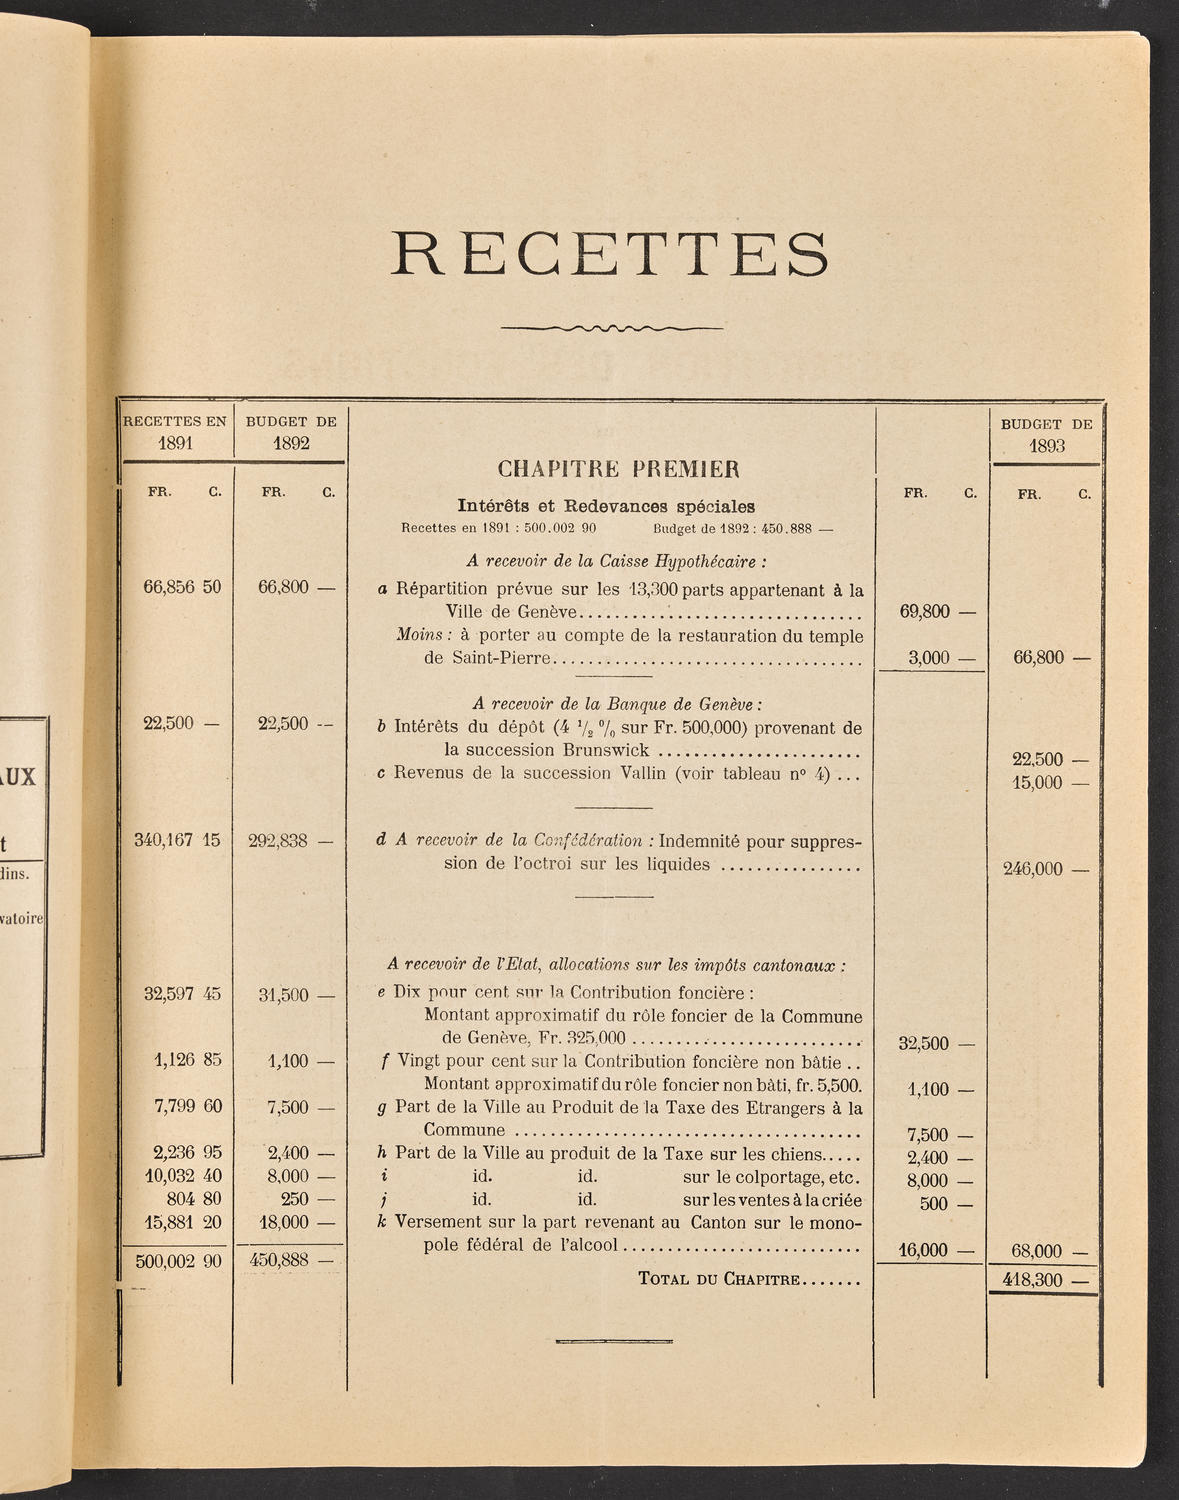 Budget de la Ville de Genève - Exercise de 1893, page 7 of 32